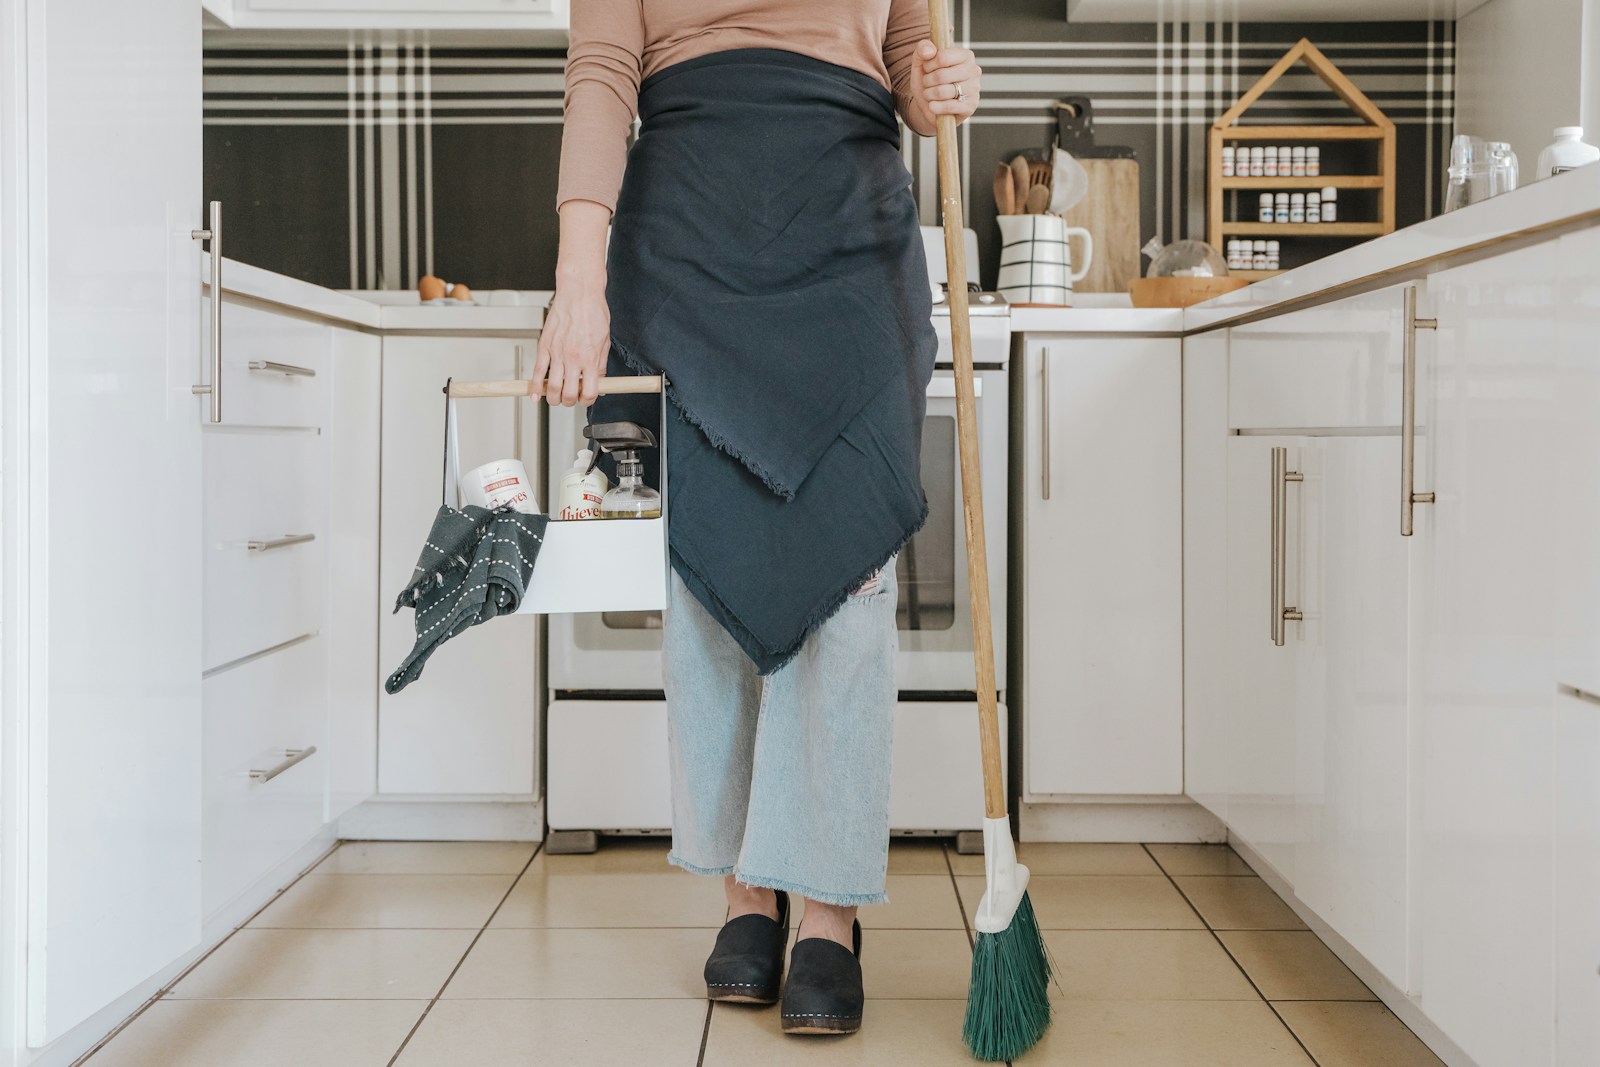 une femme debout dans une cuisine, tenant un balai d'un service de conciergerie immobilière